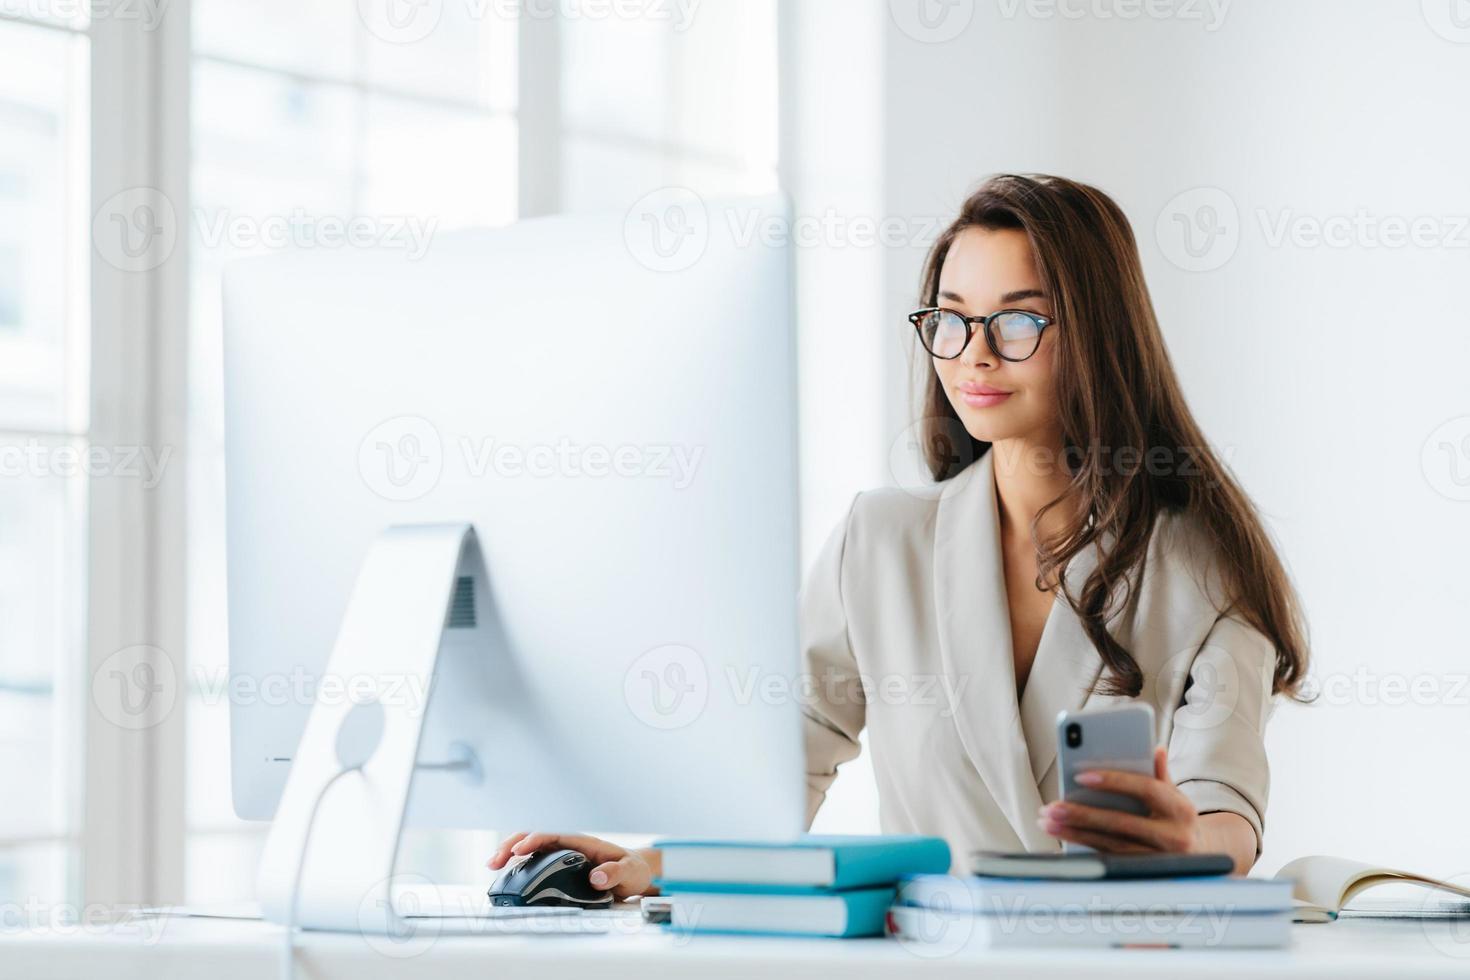 jolie femme entrepreneur aux longs cheveux noirs, travaille sur ordinateur, développe une stratégie de campagne publicitaire, pose dans un bureau de coworking moderne, utilise un téléphone portable pour discuter en ligne, porte des lunettes photo